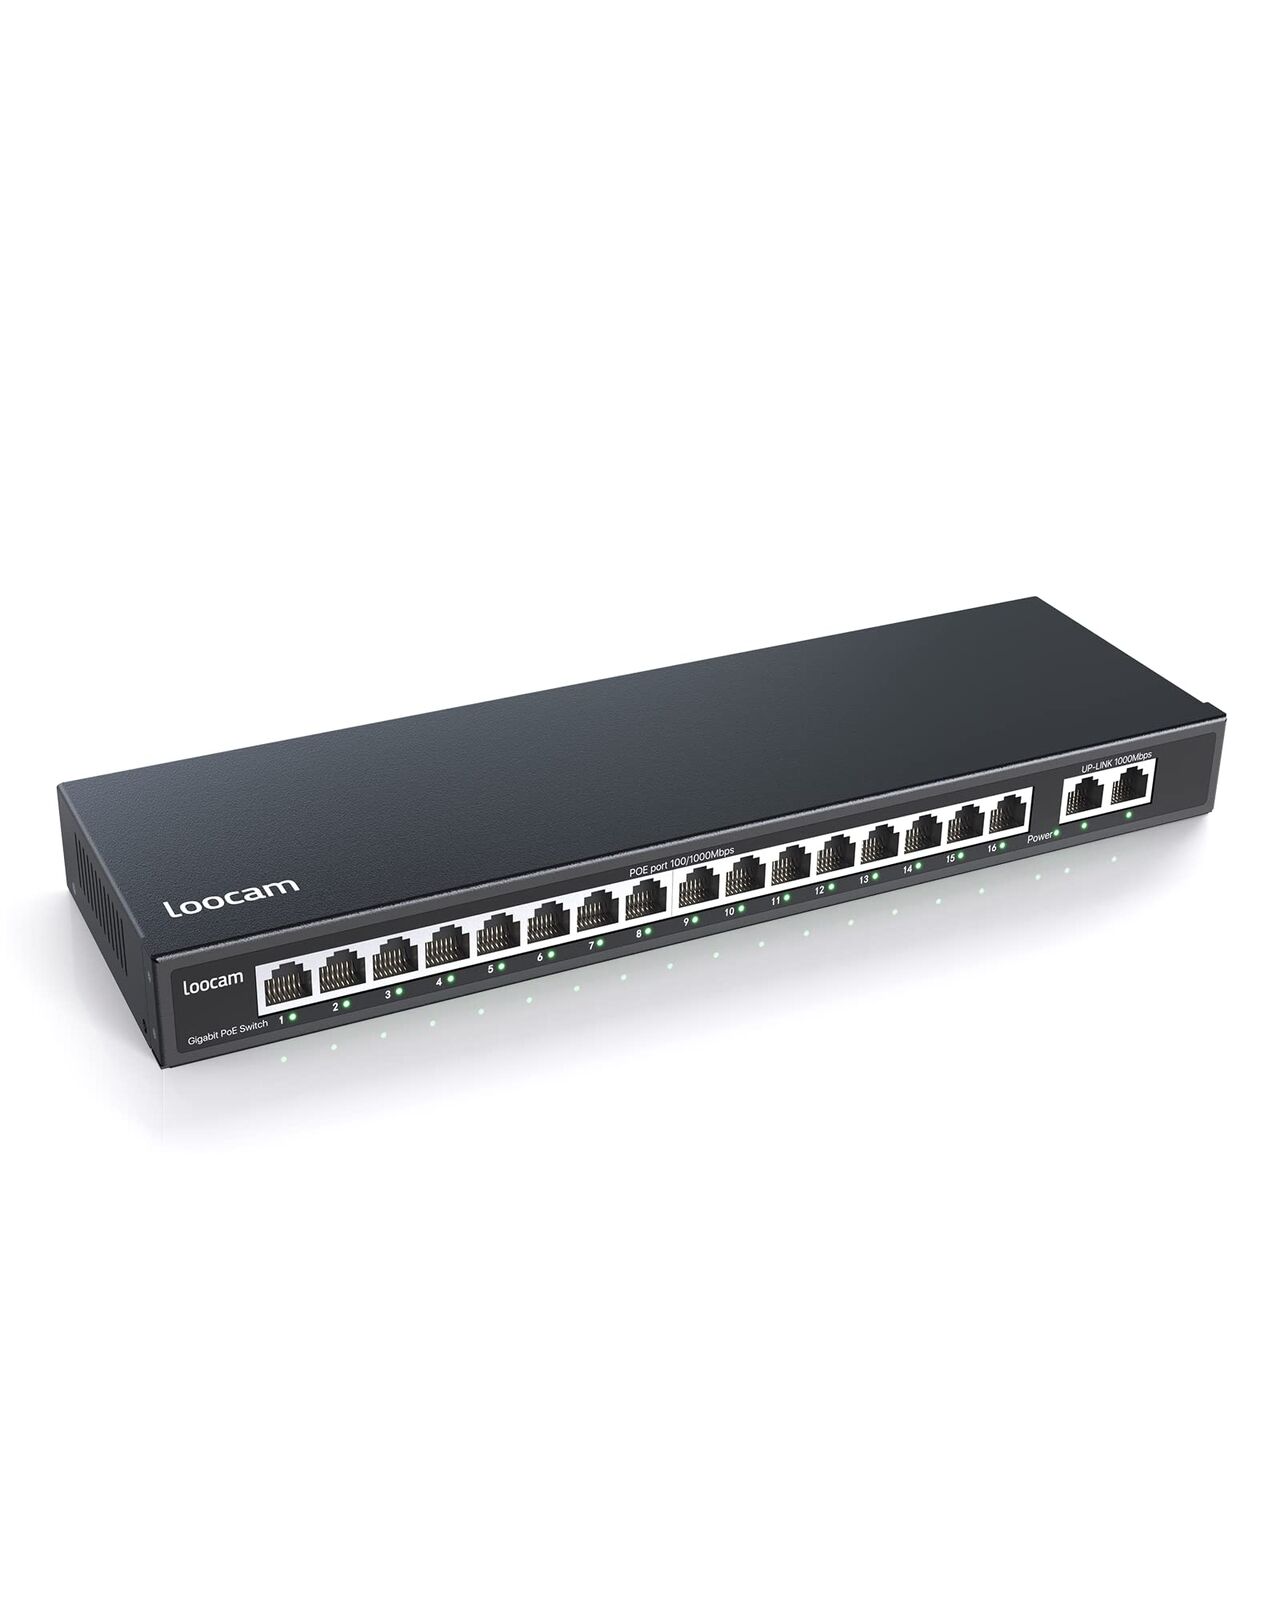 Loocam 16 Port Gigabit PoE Switch with 2 Gigabit Ethernet Uplink, 156W for 16 Po